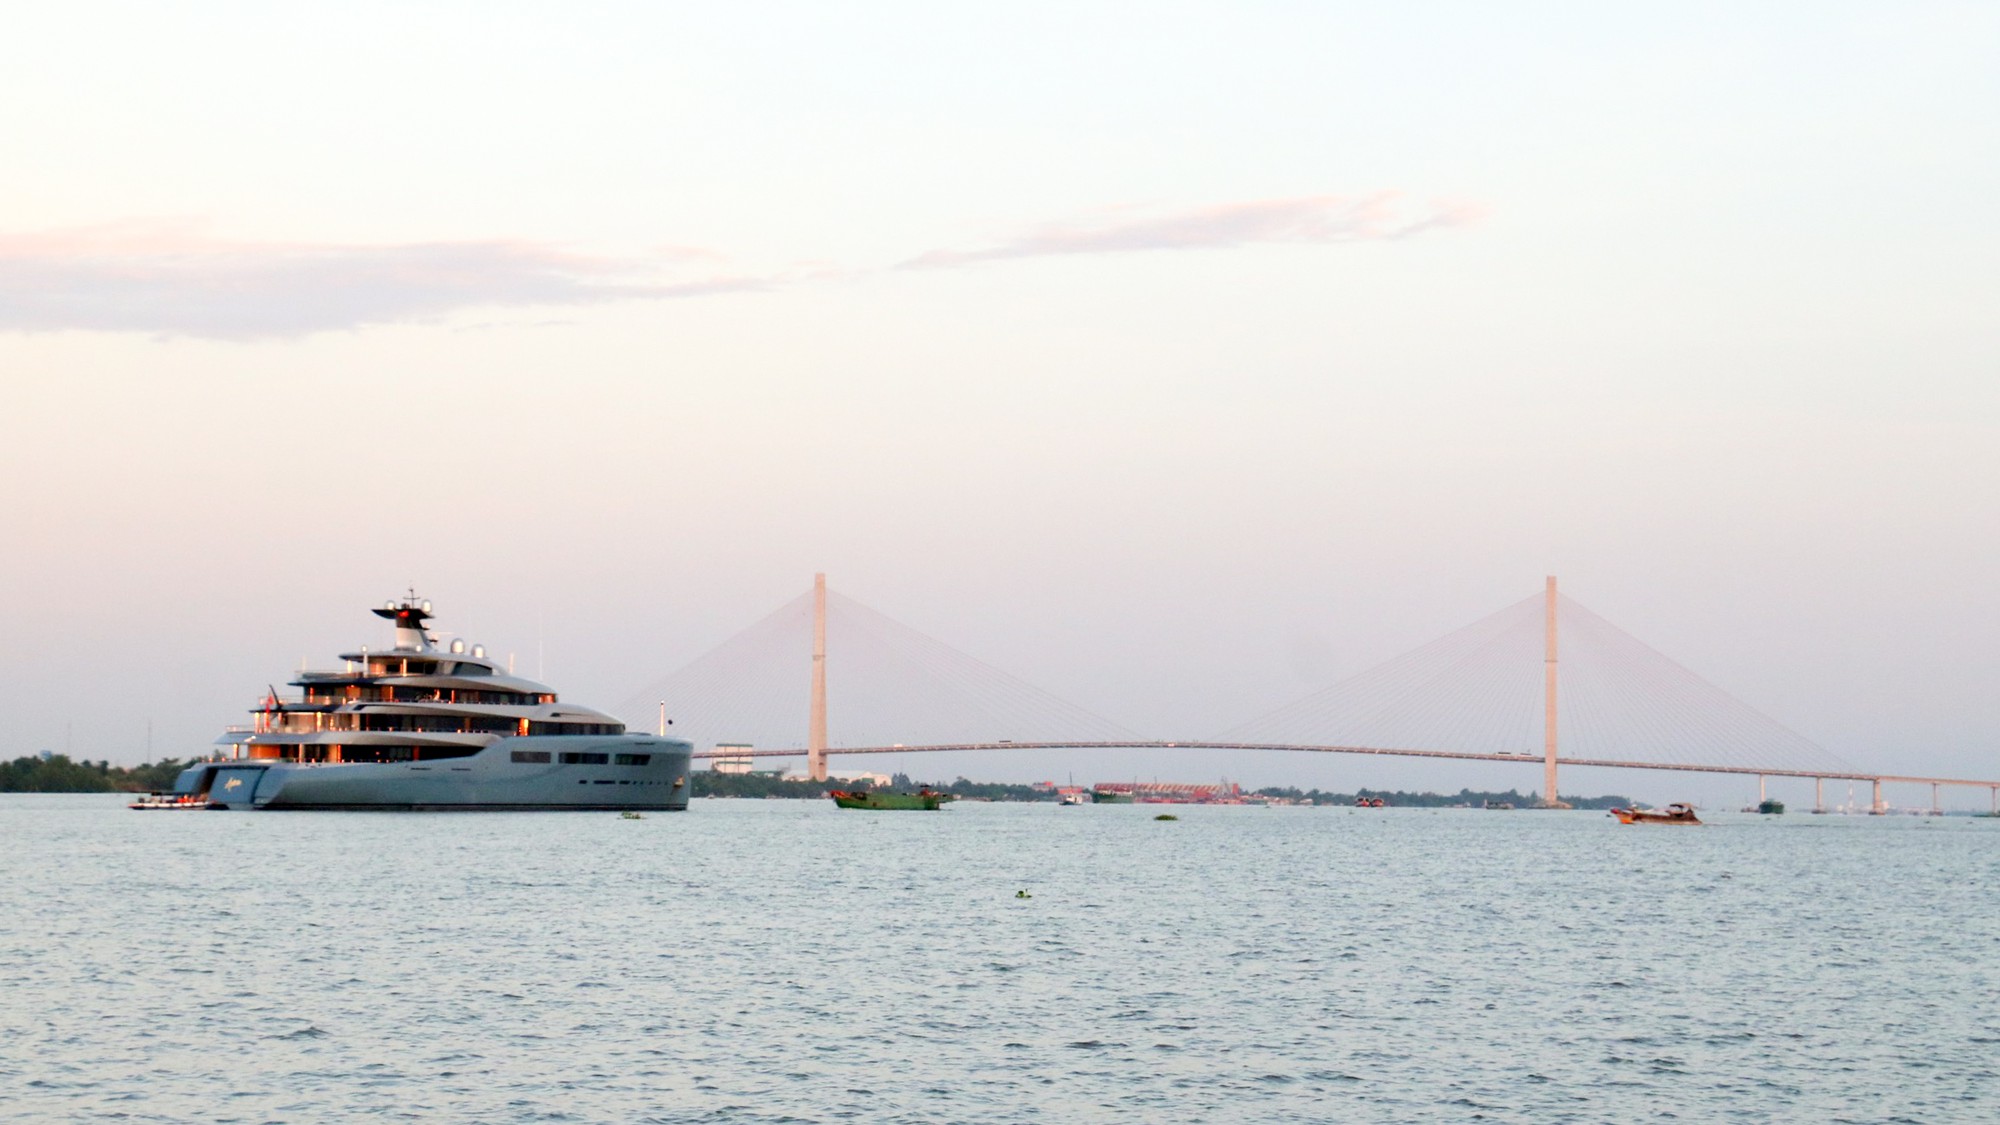 Cận cảnh siêu du thuyền triệu đô lướt sóng trên sông Hậu - Ảnh 8.